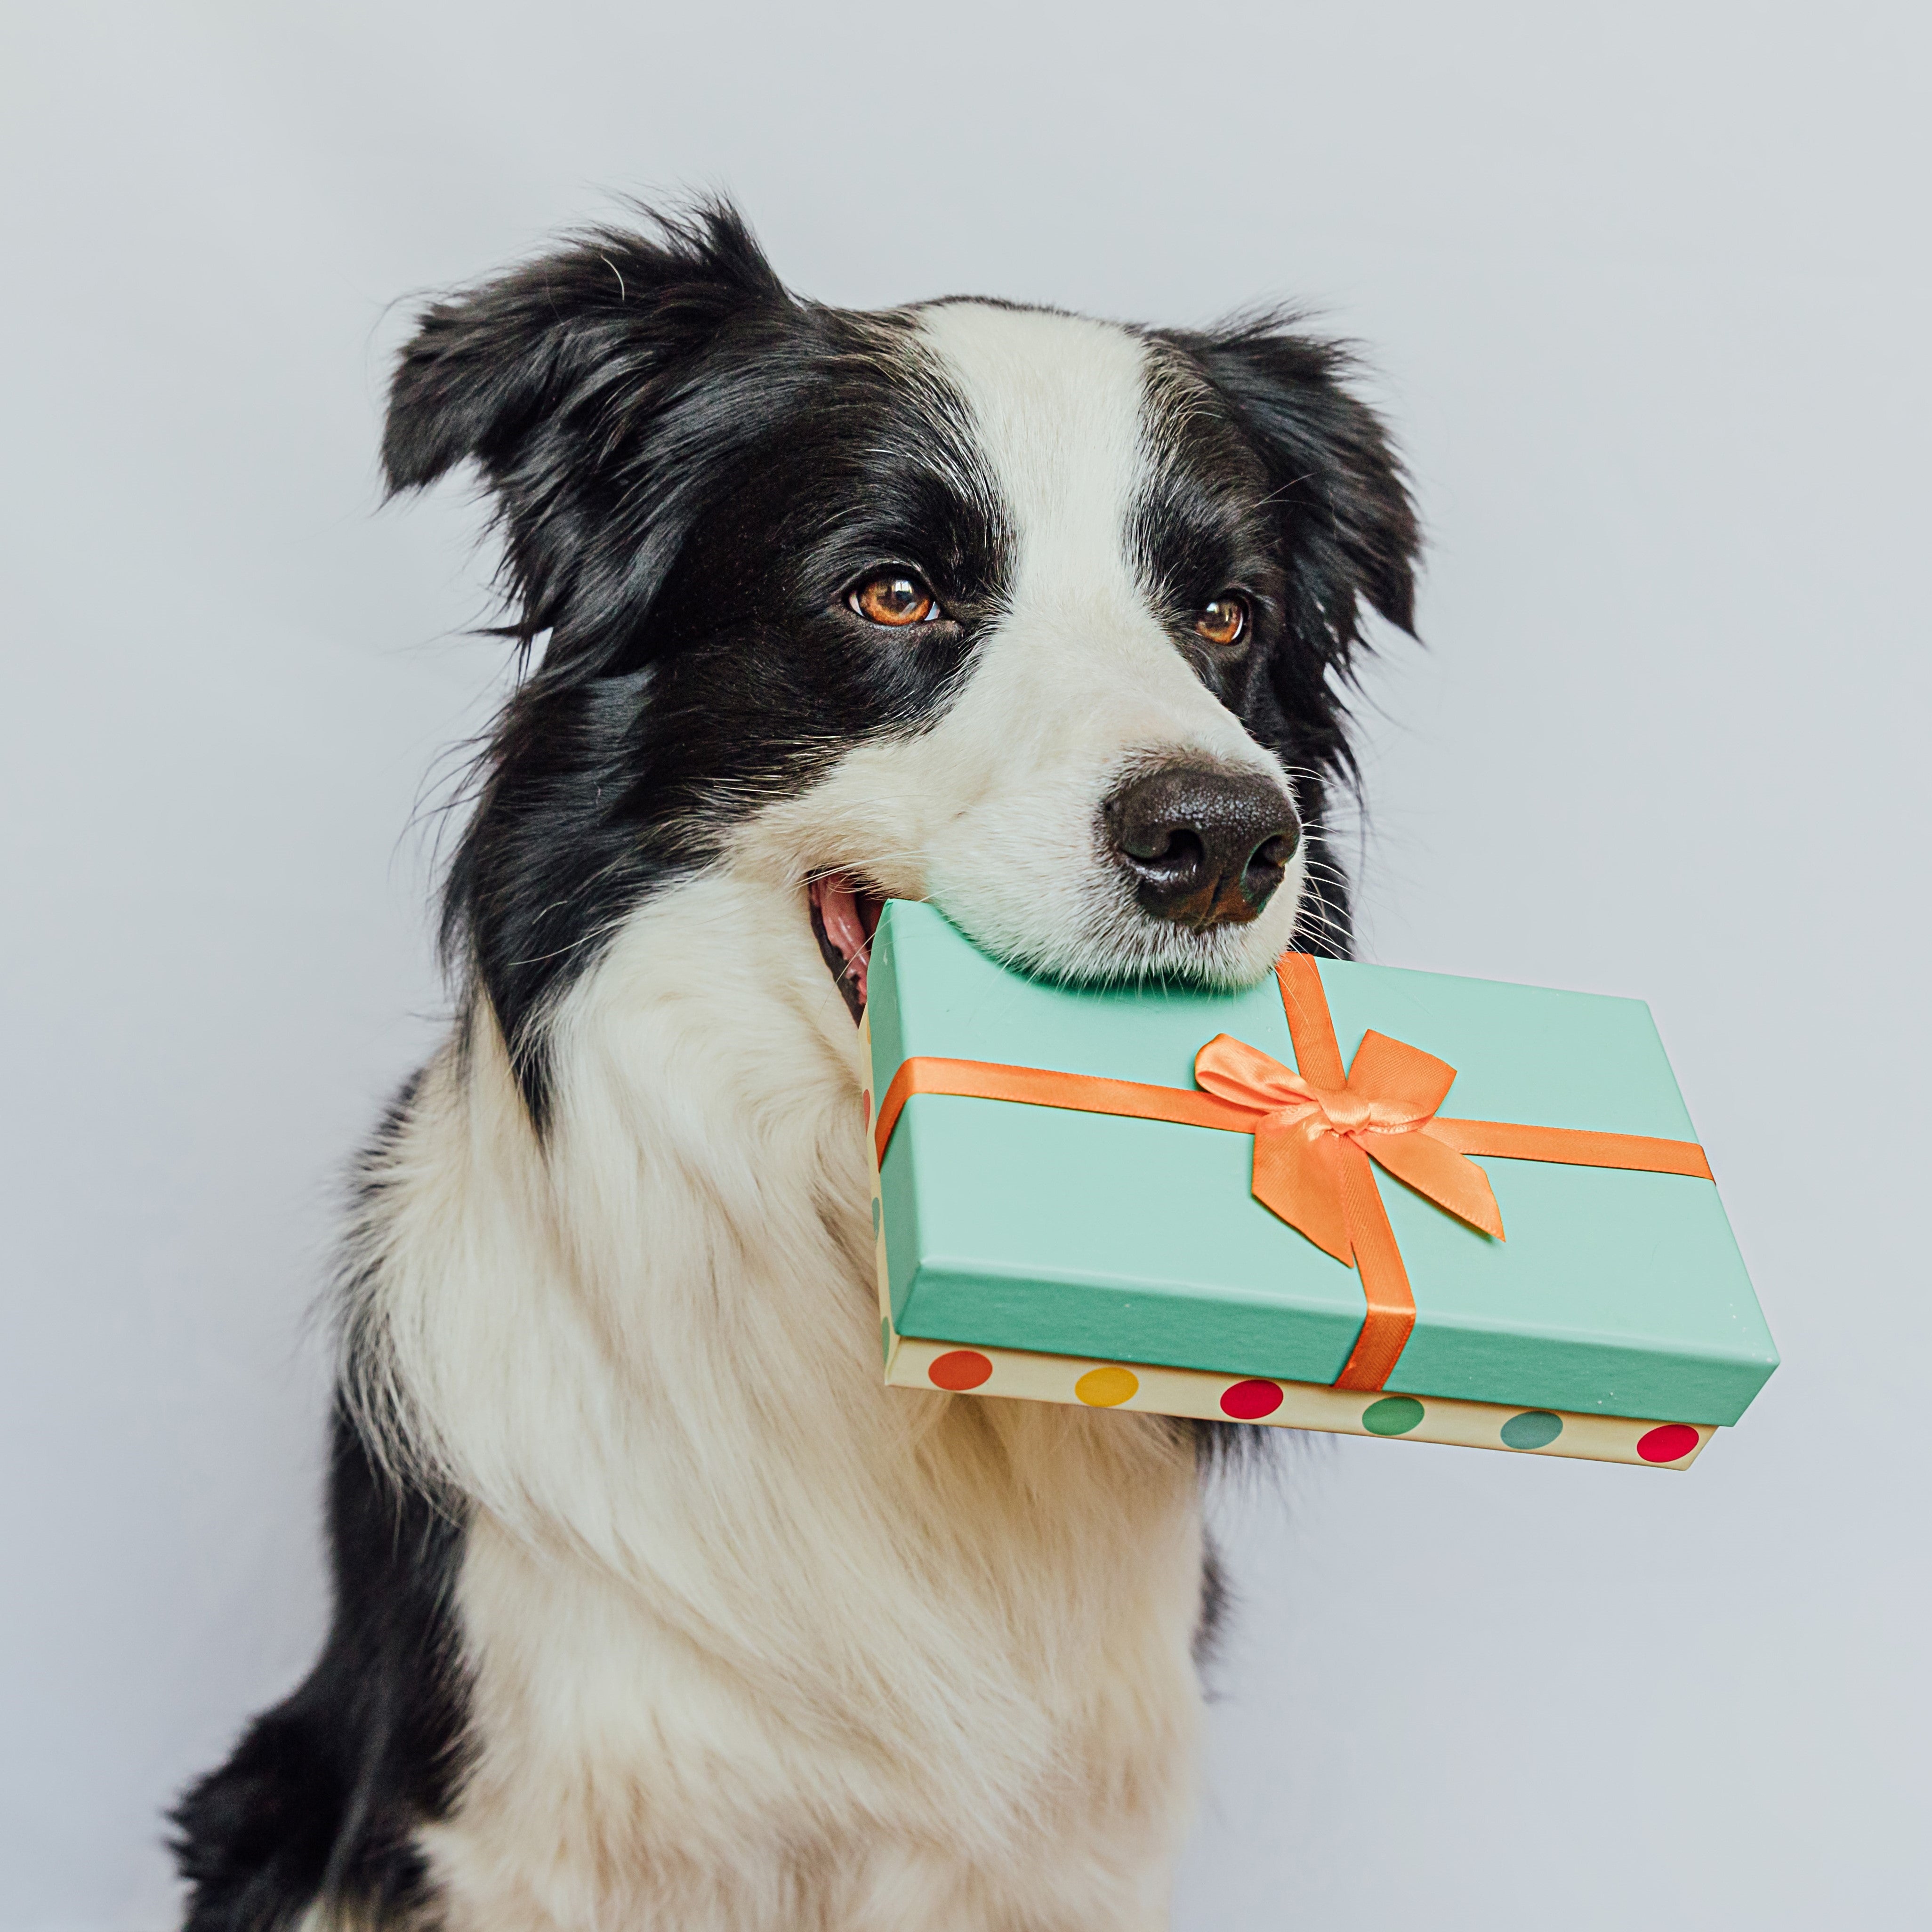 Kategoriebild "Gutscheine" im AMMI for Dogs Onlineshop. Zu sehen ist ein großer schwarz weißer Hund mit einem Geschenk in der Schnauze, der aufmerksam aus dem rechtem Bildrand schaut.